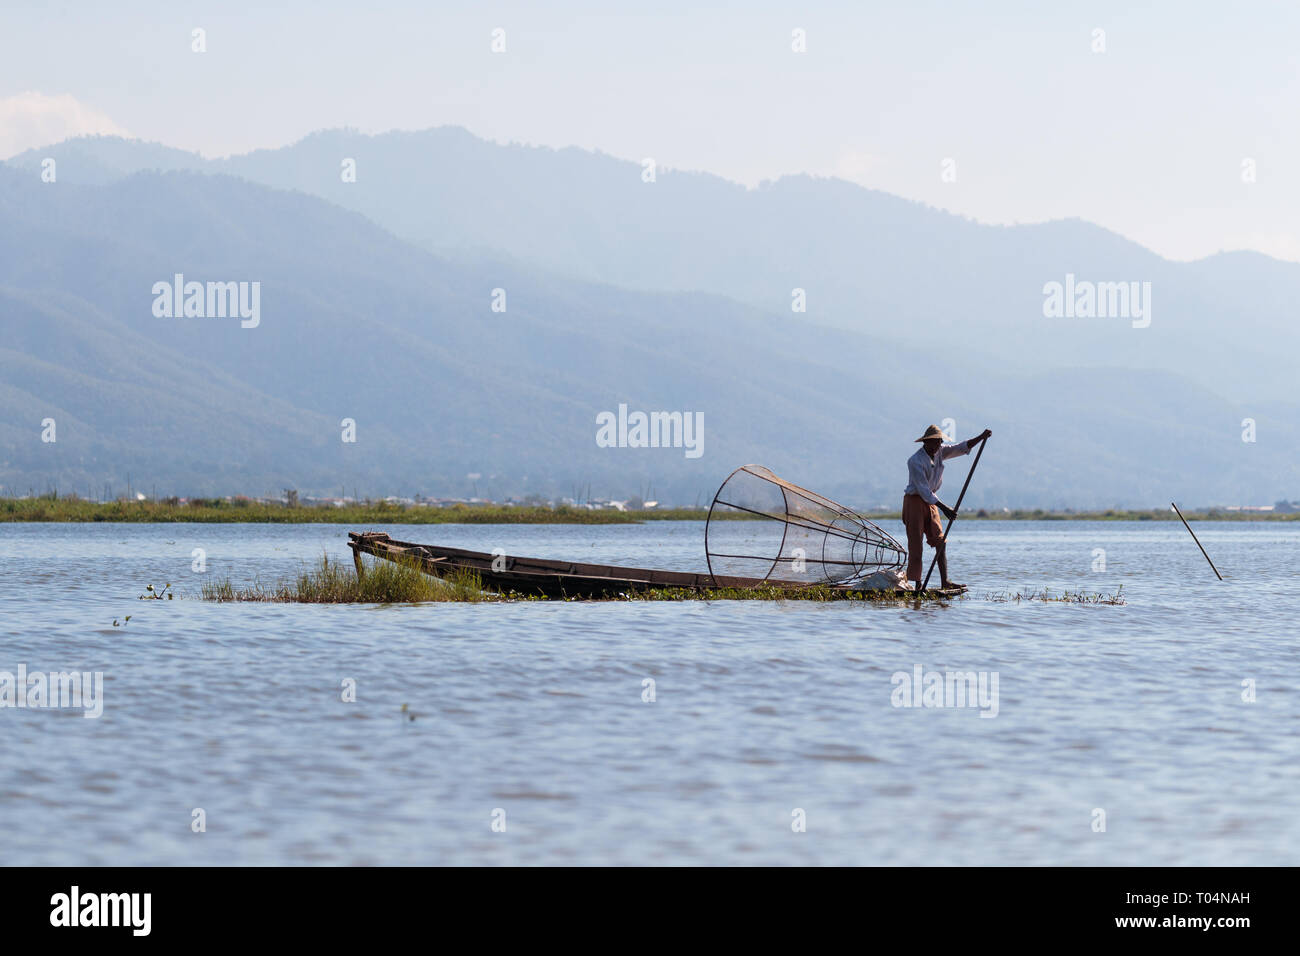 Los pescadores de pesca con Big Red en un único y tradicional estilo de remo de la pierna durante la puesta de sol sobre el Lago Inle en el estado de Shan, en Myanmar, Birmania Foto de stock